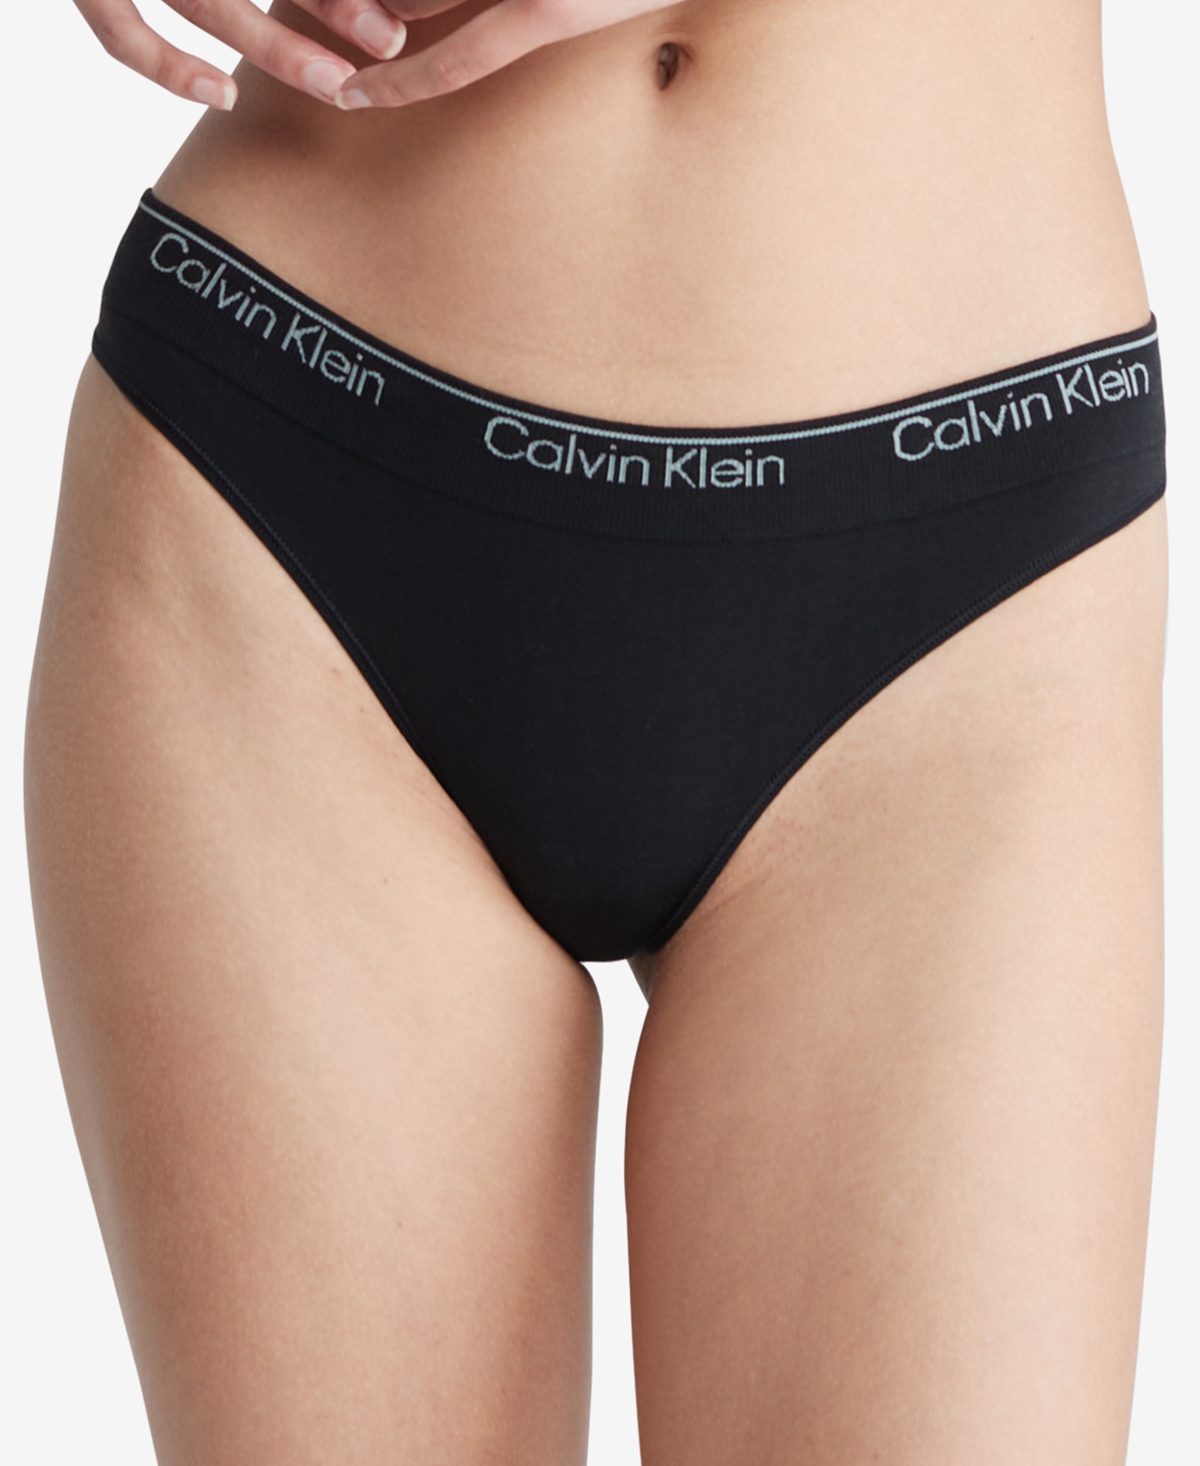 Calvin Klein Women's Modern Cotton Naturals Seamless Thong